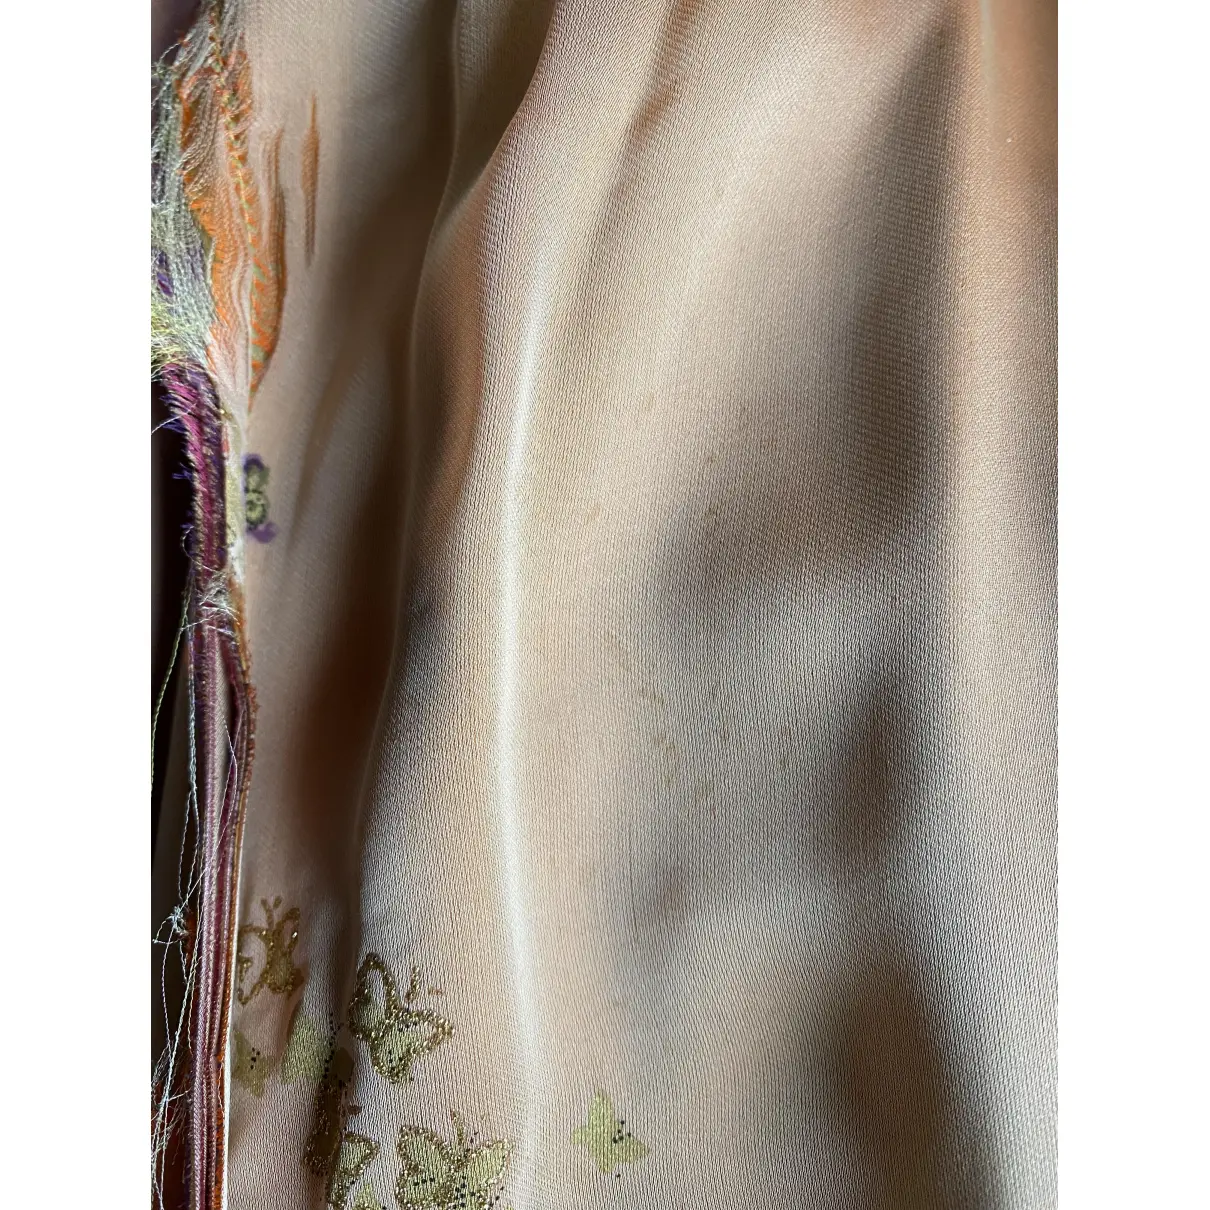 Silk jacket Roberto Cavalli - Vintage